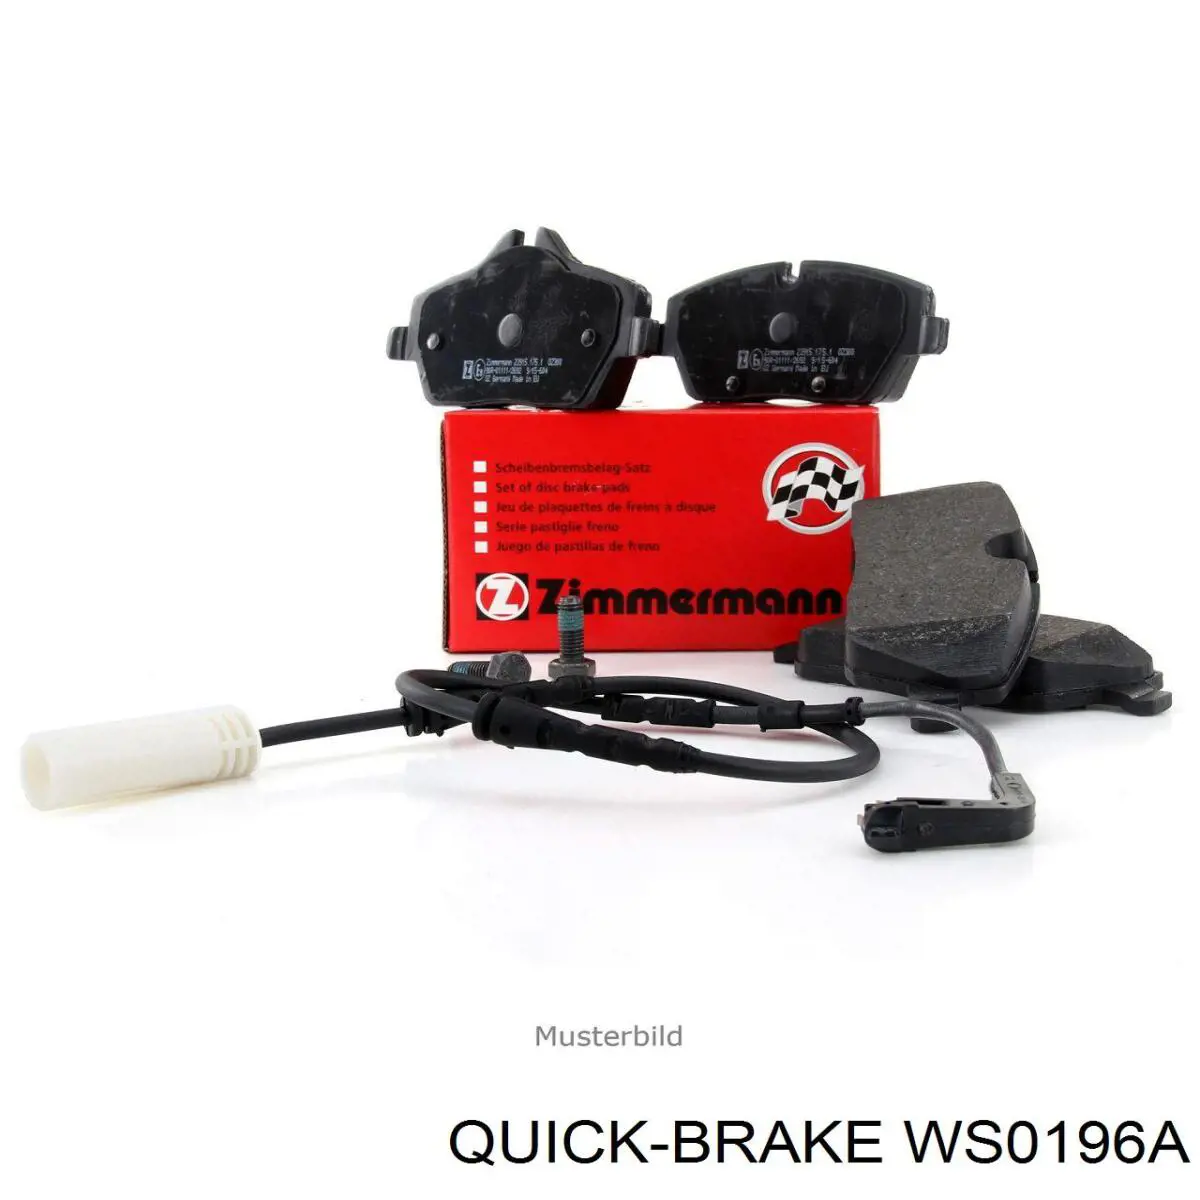 WS0196A Quick Brake contacto de aviso, desgaste de los frenos, trasero